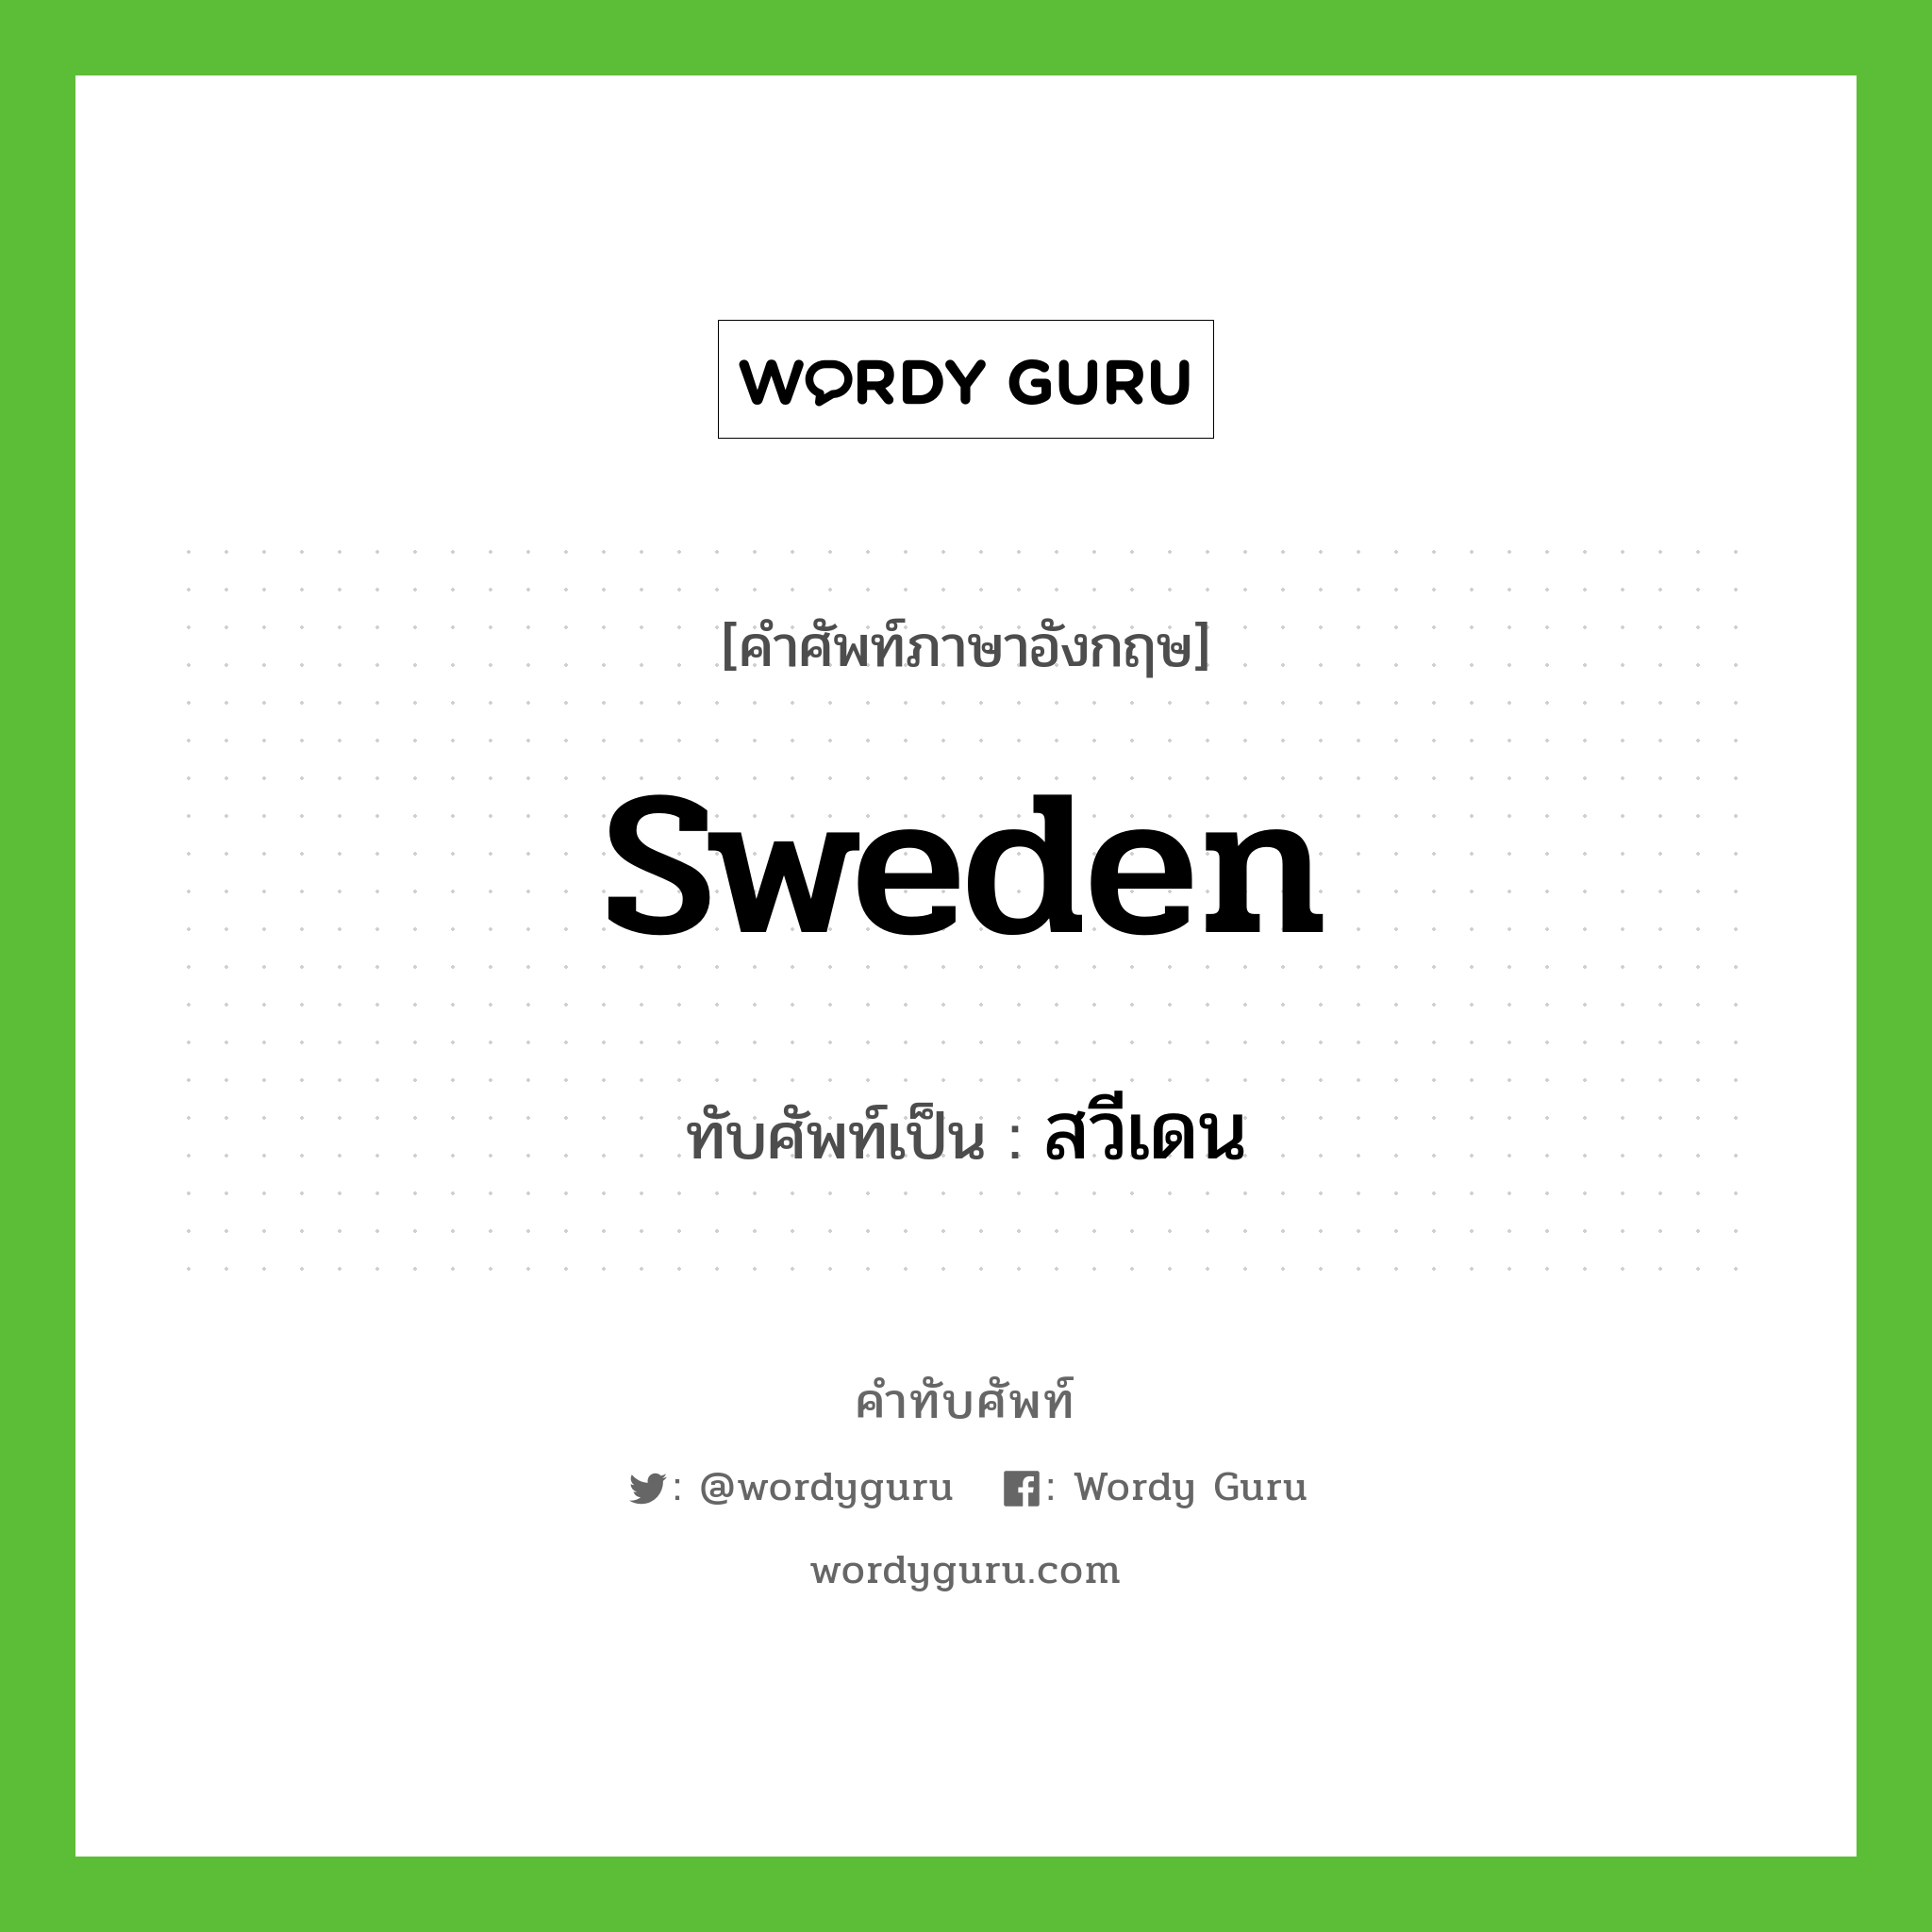 สวีเดน เขียนอย่างไร?, คำศัพท์ภาษาอังกฤษ สวีเดน ทับศัพท์เป็น Sweden